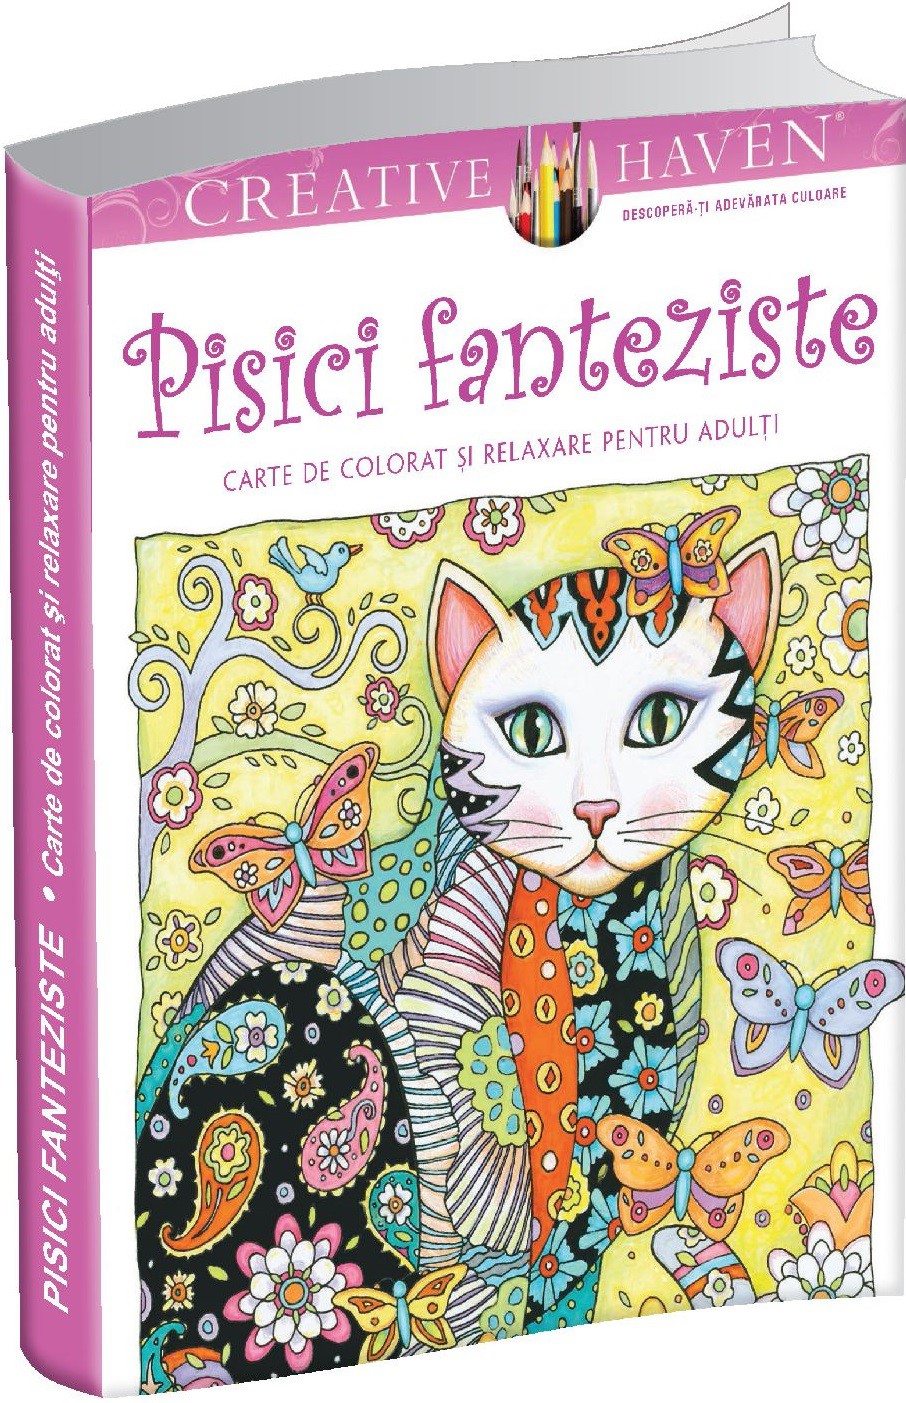 Pachet: Pisici fanteziste – carte de colorat si relaxare pentru adulti + Relaxare pentru incepatoare